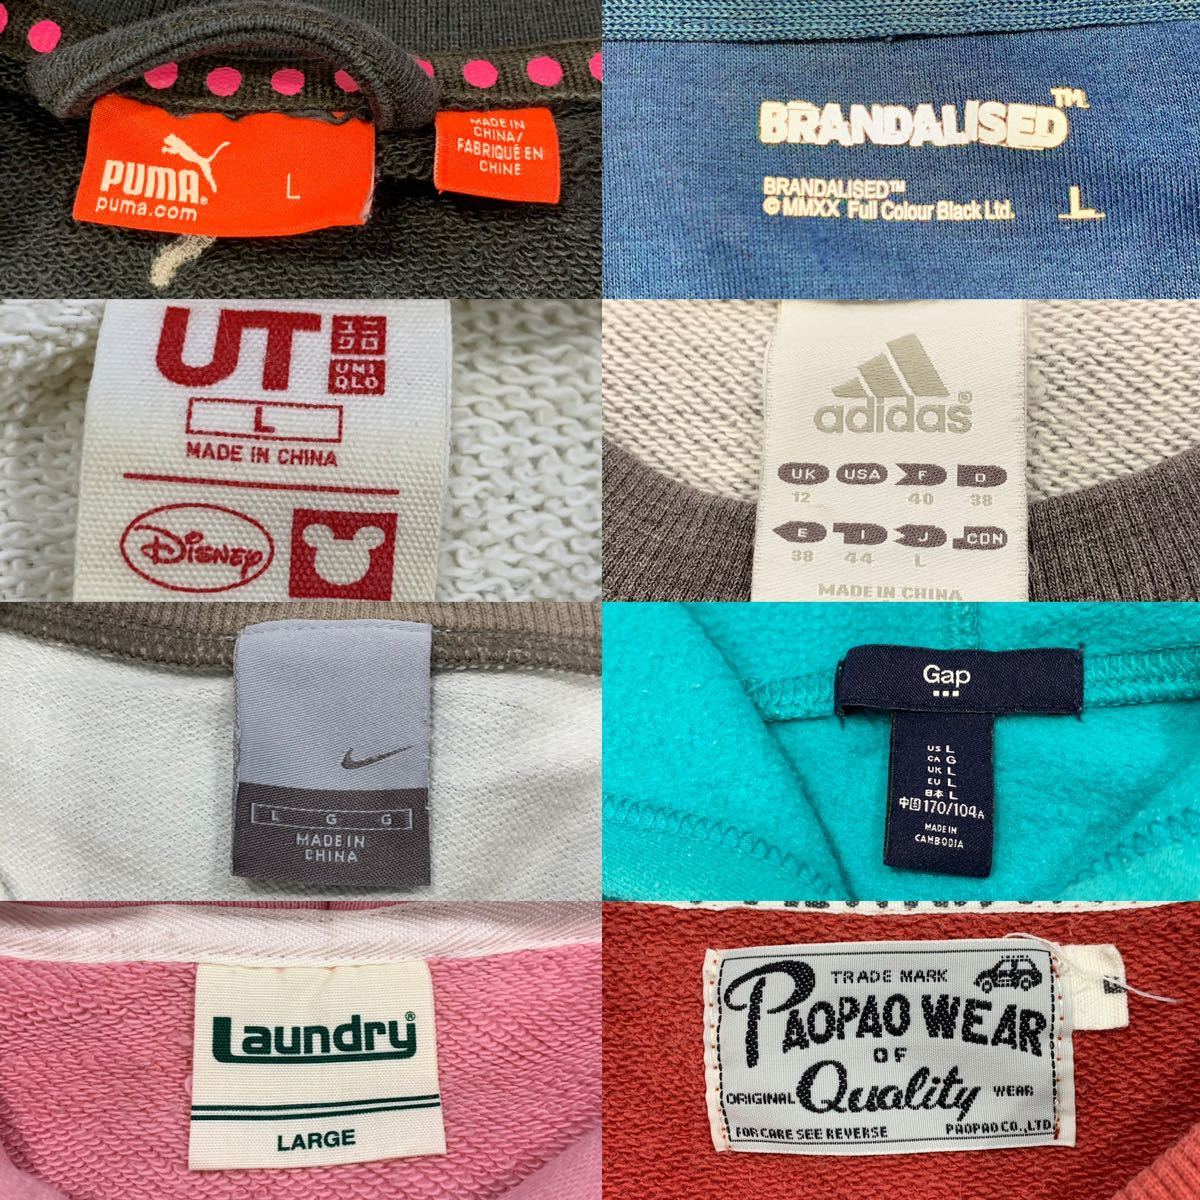  женский Parker футболка флис тренировочный б/у одежда 8 листов продажа комплектом Nike Adidas Puma Uniqlo размер L соответствует #0119KHM①